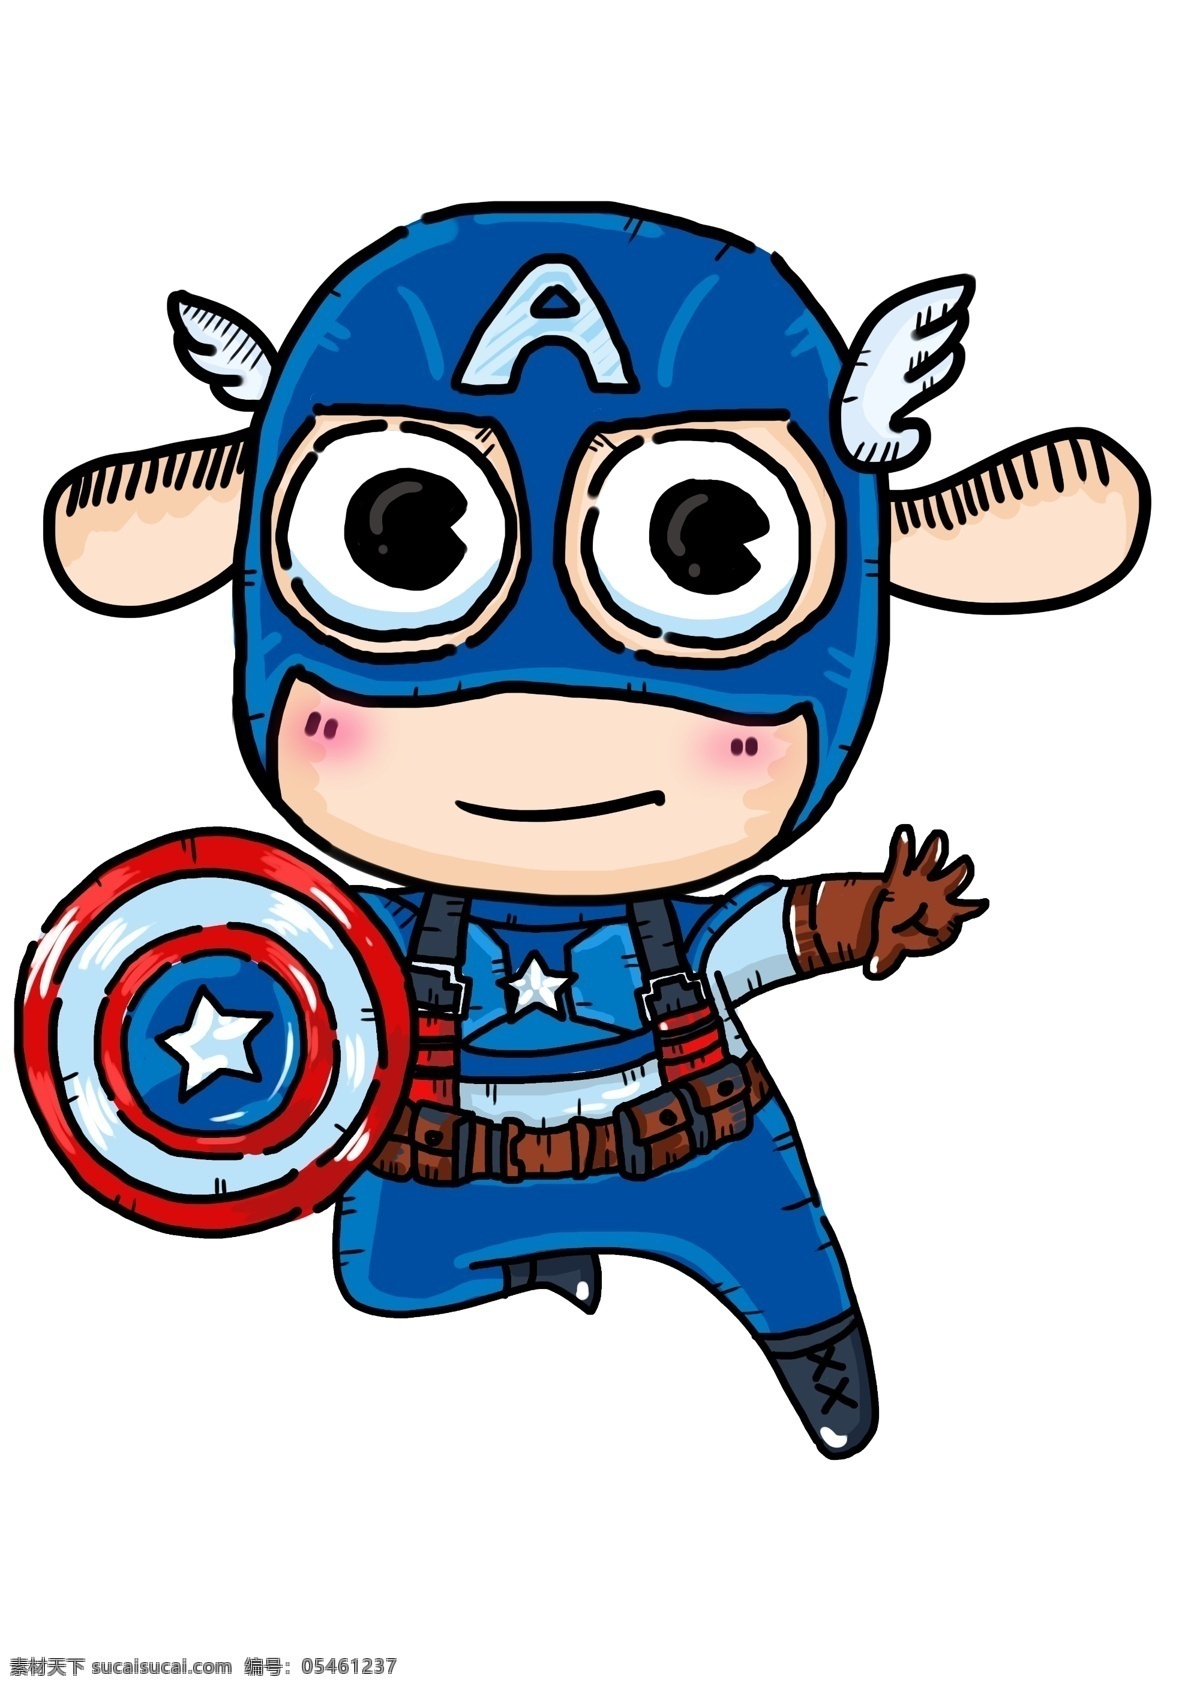 美国卡通人物 美国 盾牌 超人 复仇者联盟 卡通 漫画 动漫 手绘 国旗 队长 动漫动画 动漫人物